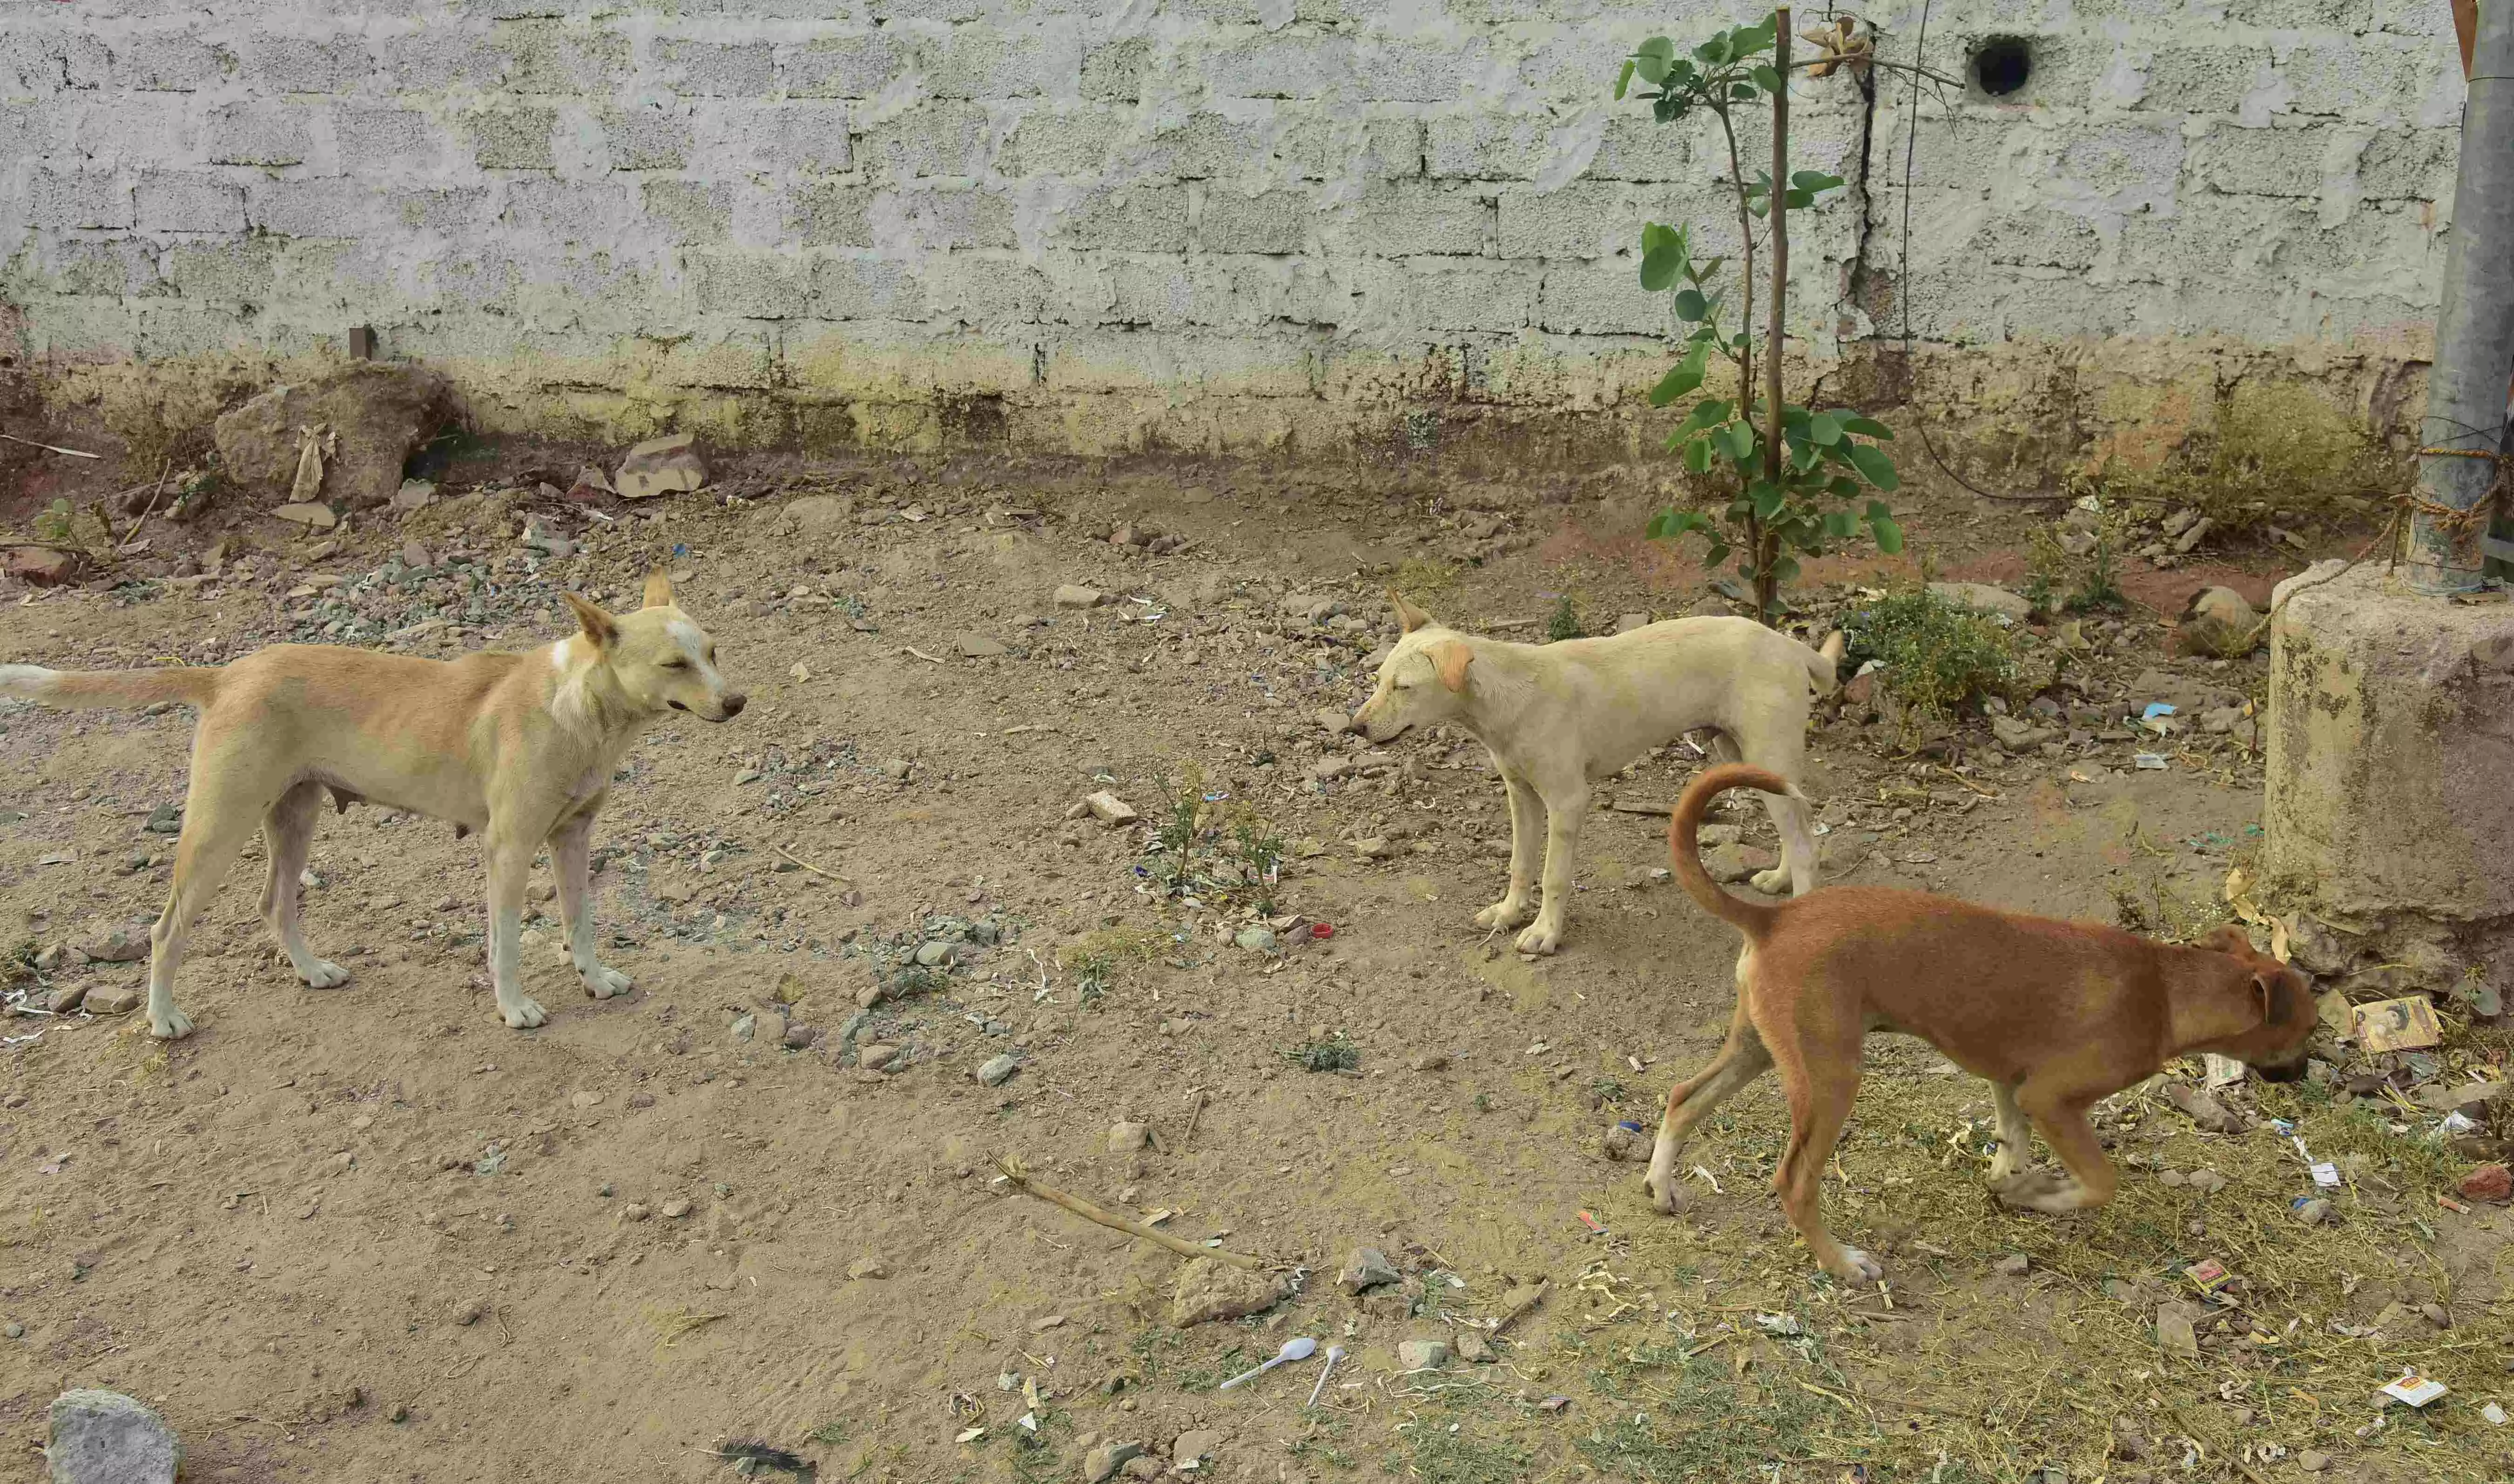 हैदराबाद शहर में आवारा कुत्तों के हमलों के मामले बढ़ने से चौतरफा चिंता